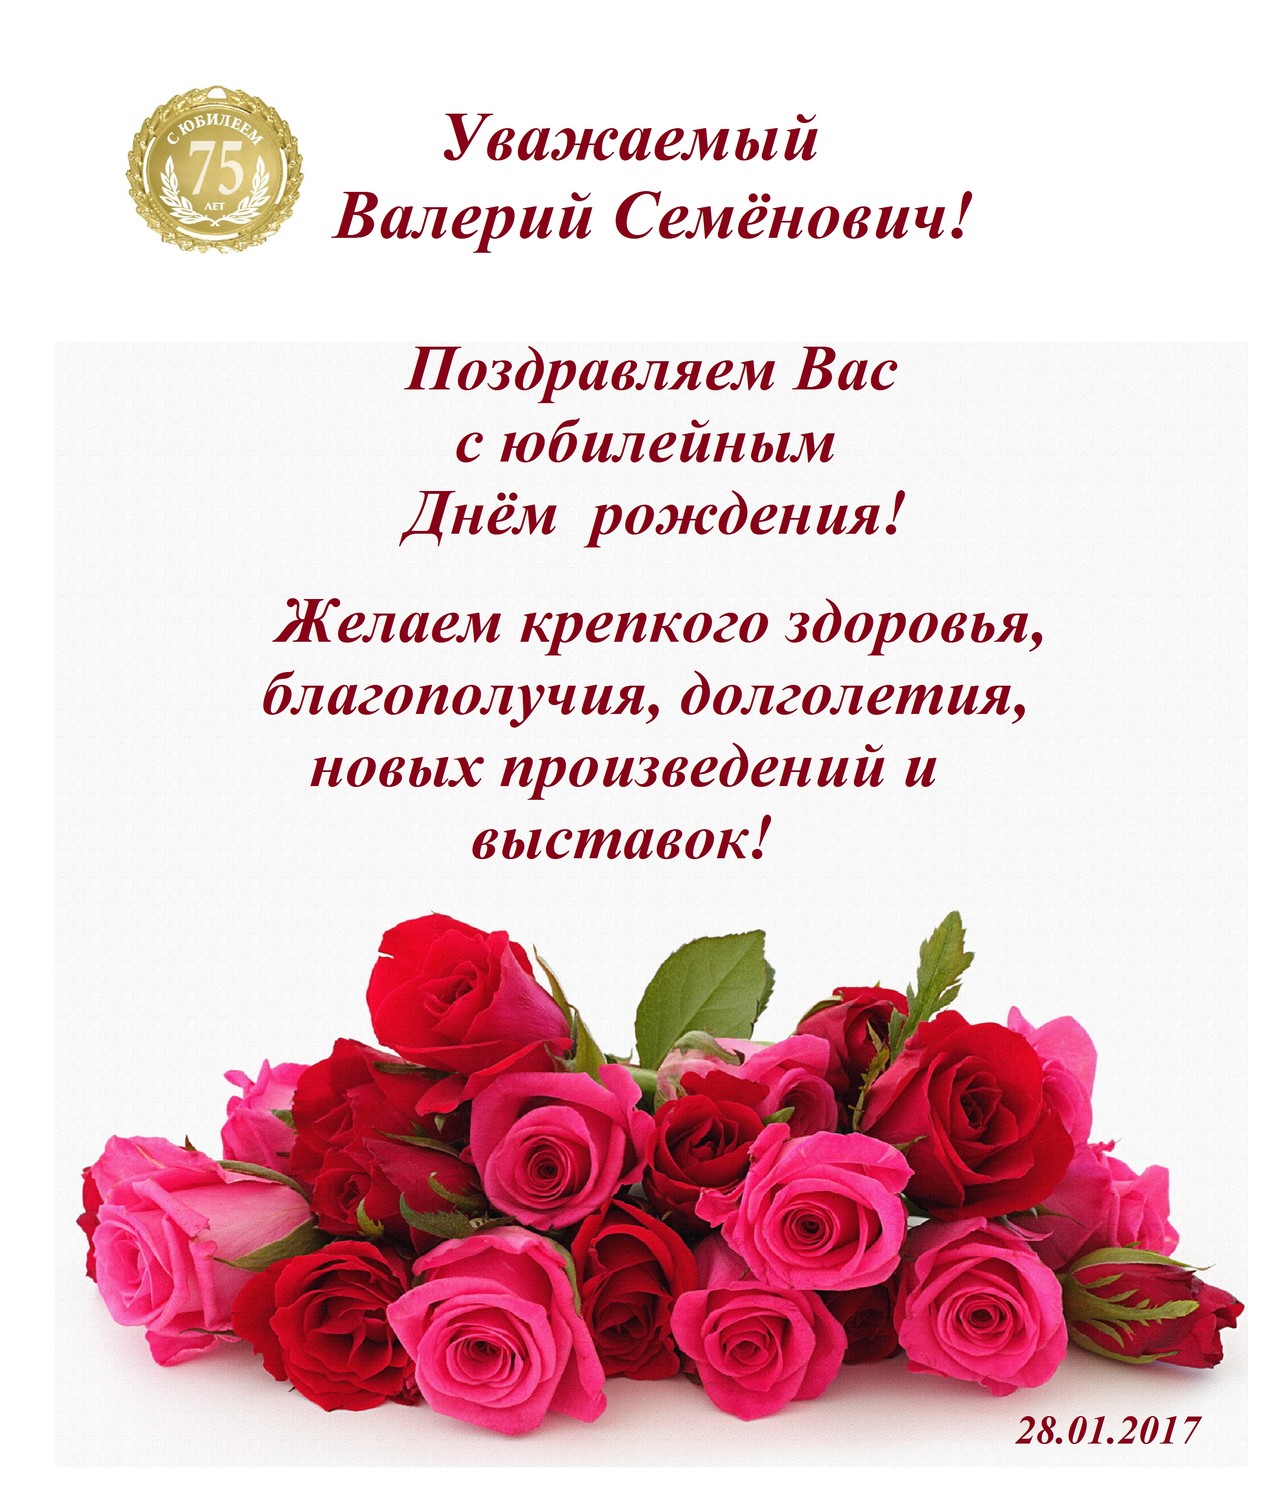 Поздравления Татьяне Борисовне